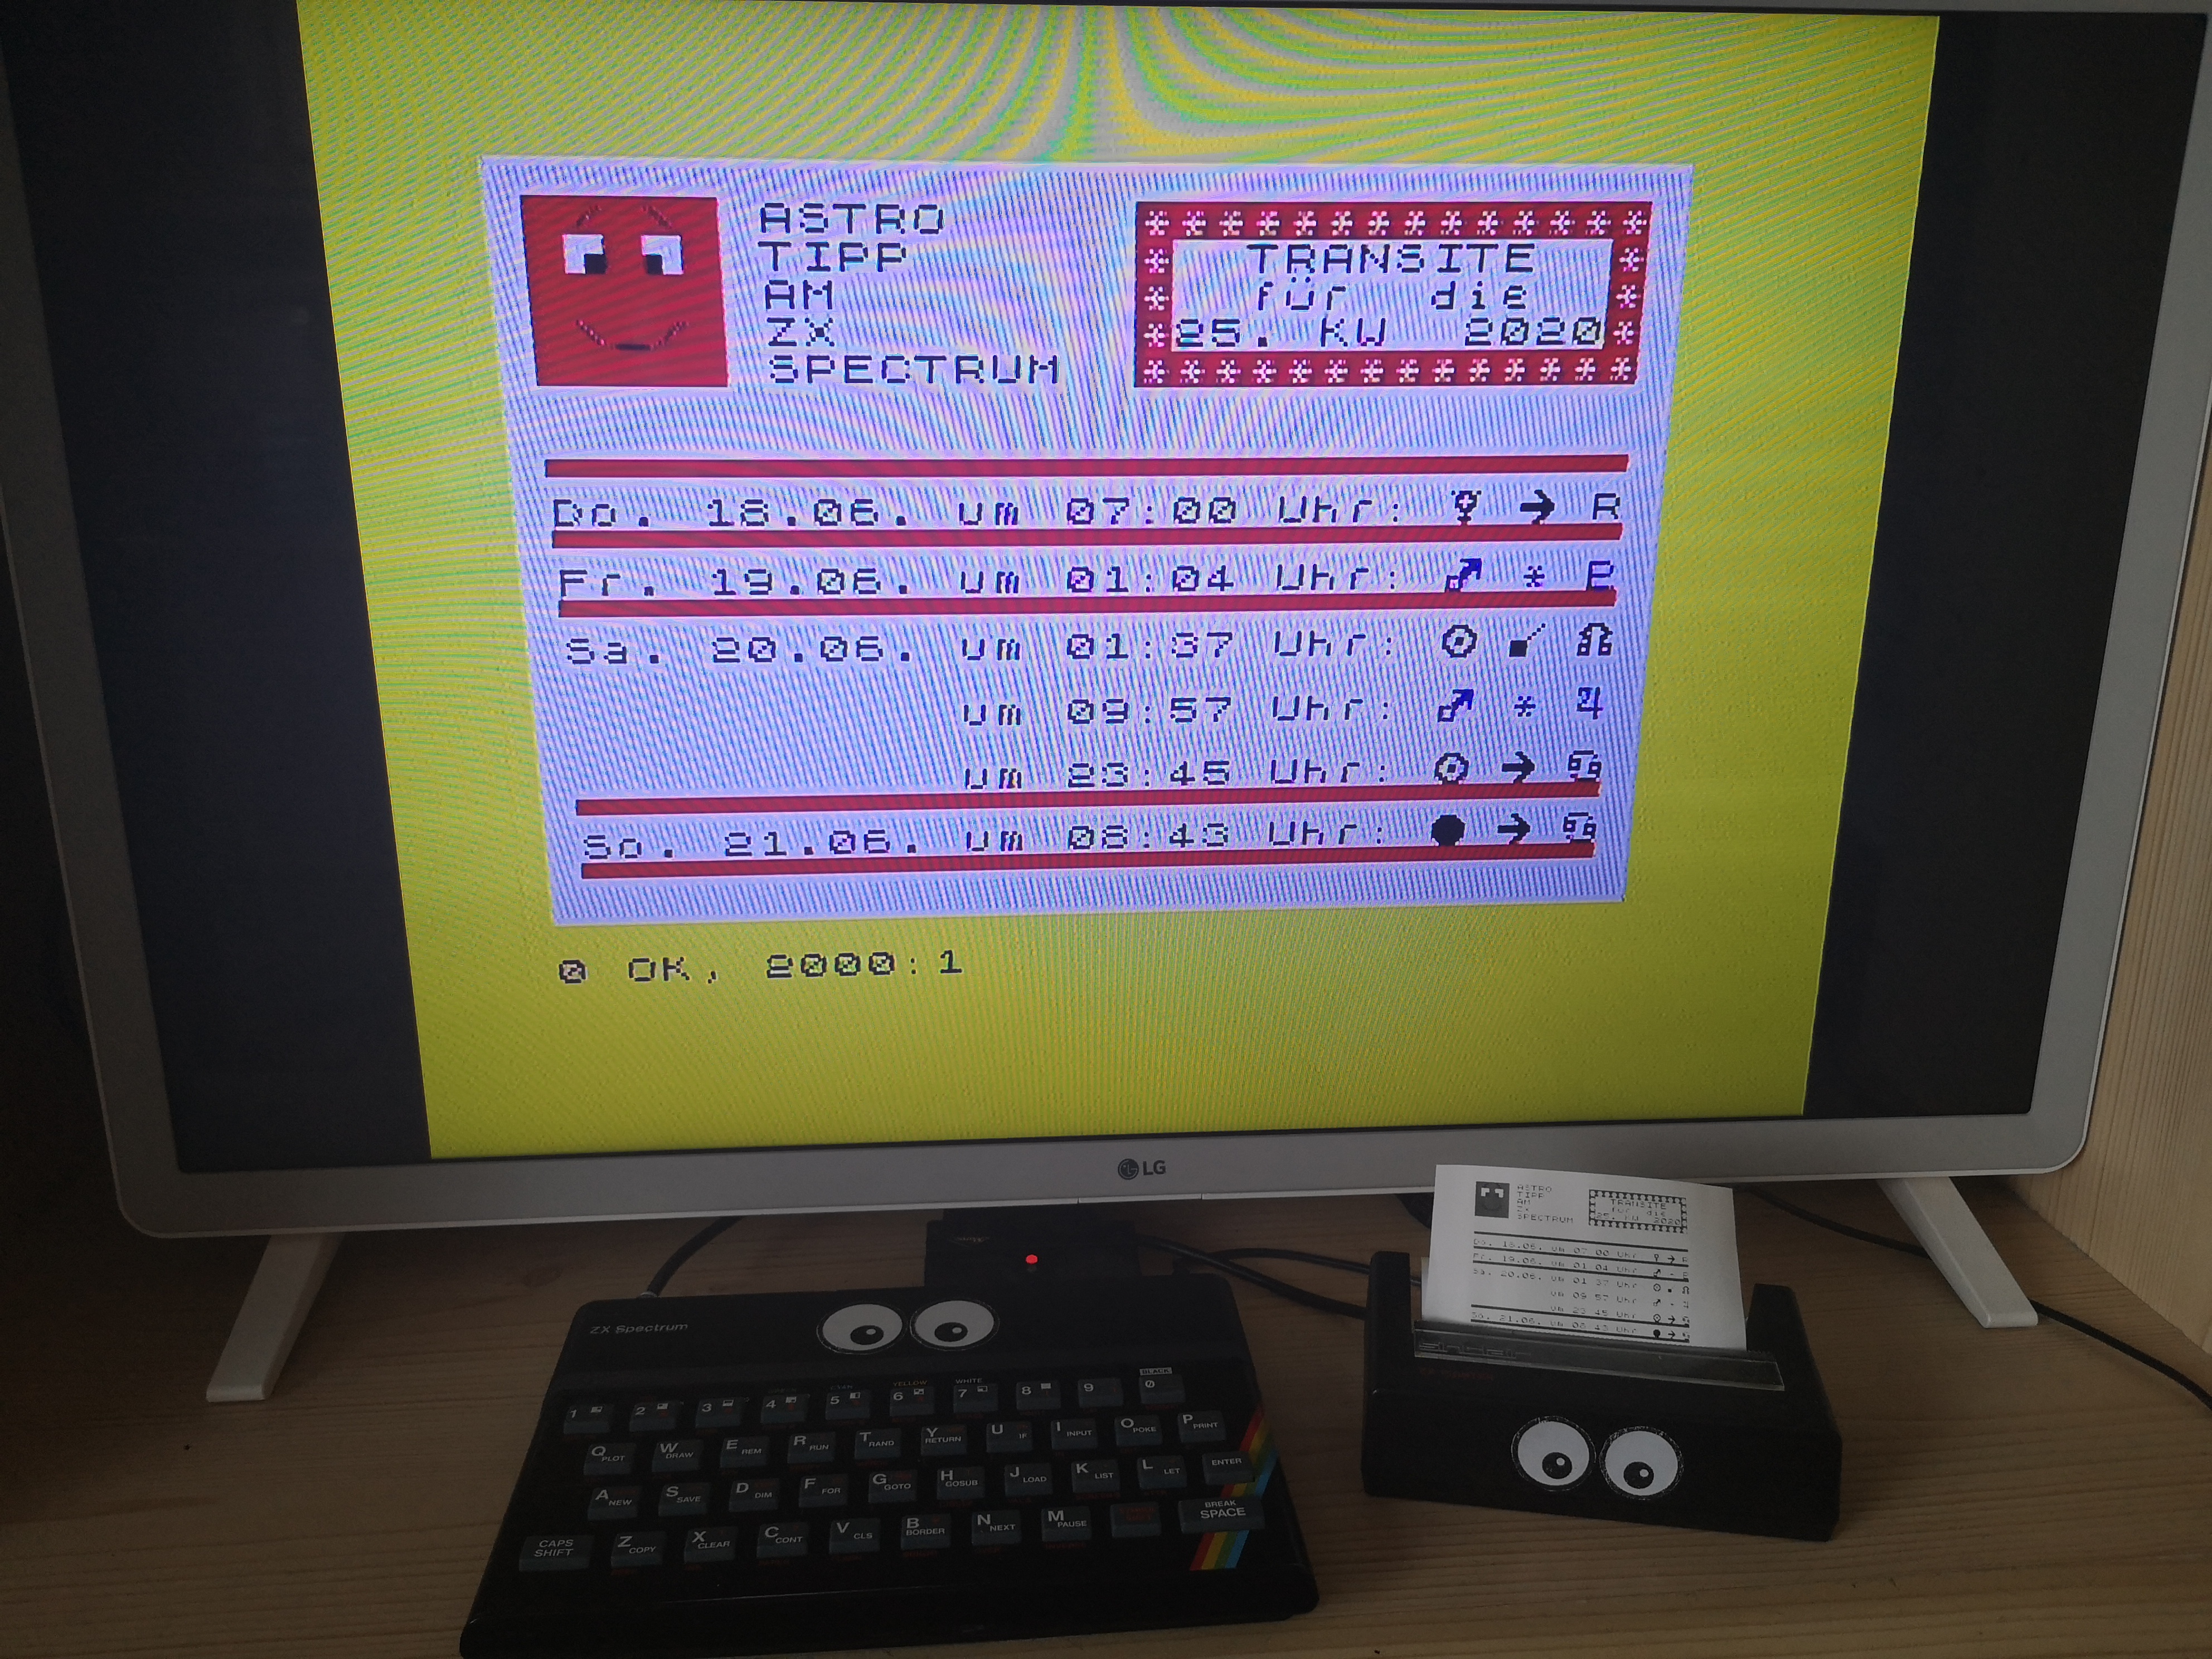 Astro-Tipps dieser Kalenderwoche am ZX Spectrum und ZX Printer